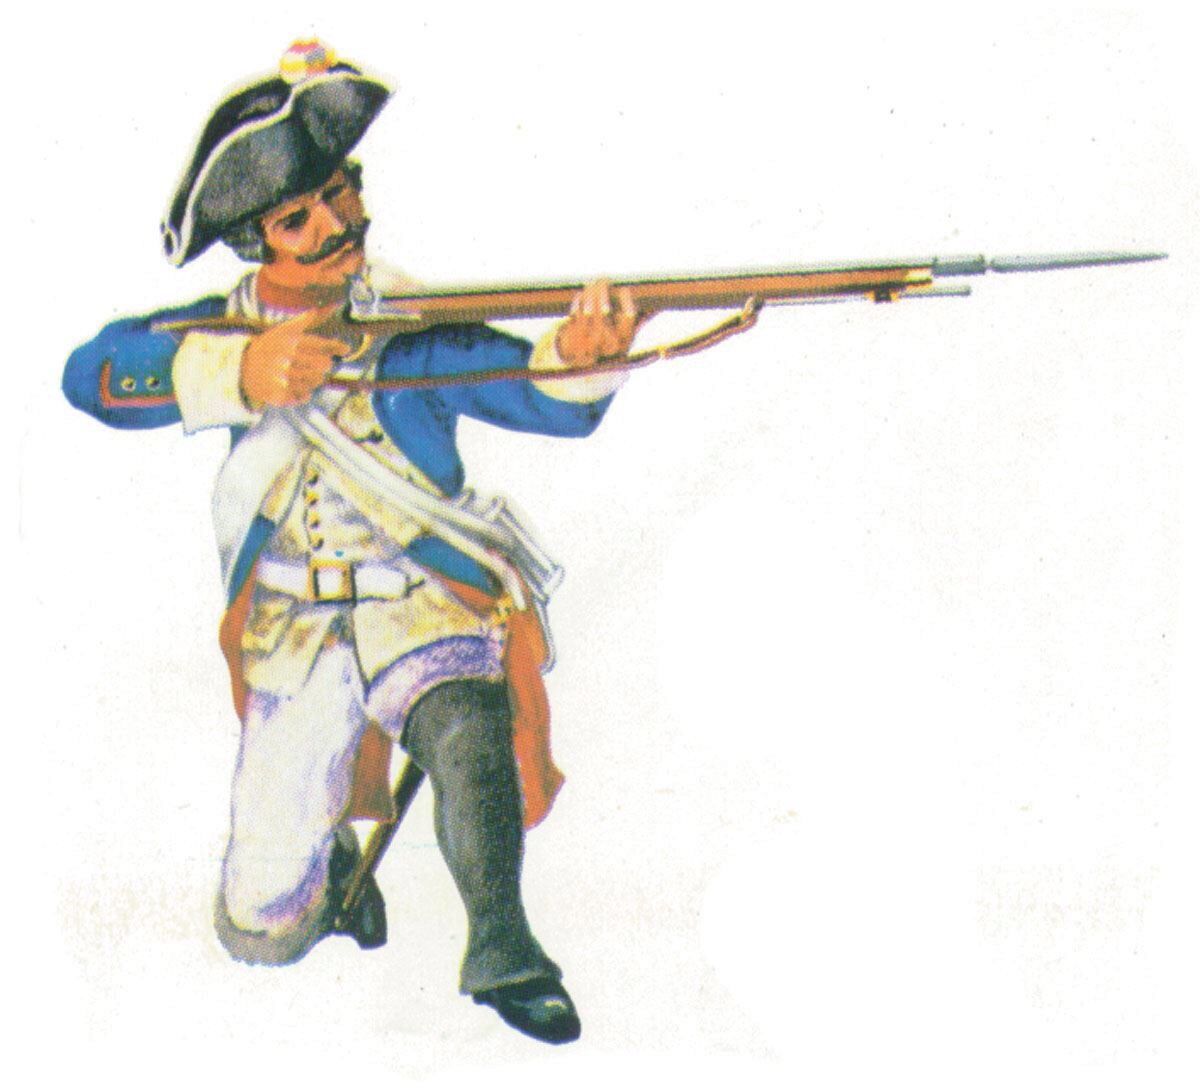 Prince August 405 Zinngiessform Prussian Musketier Preussen 18. Jh.